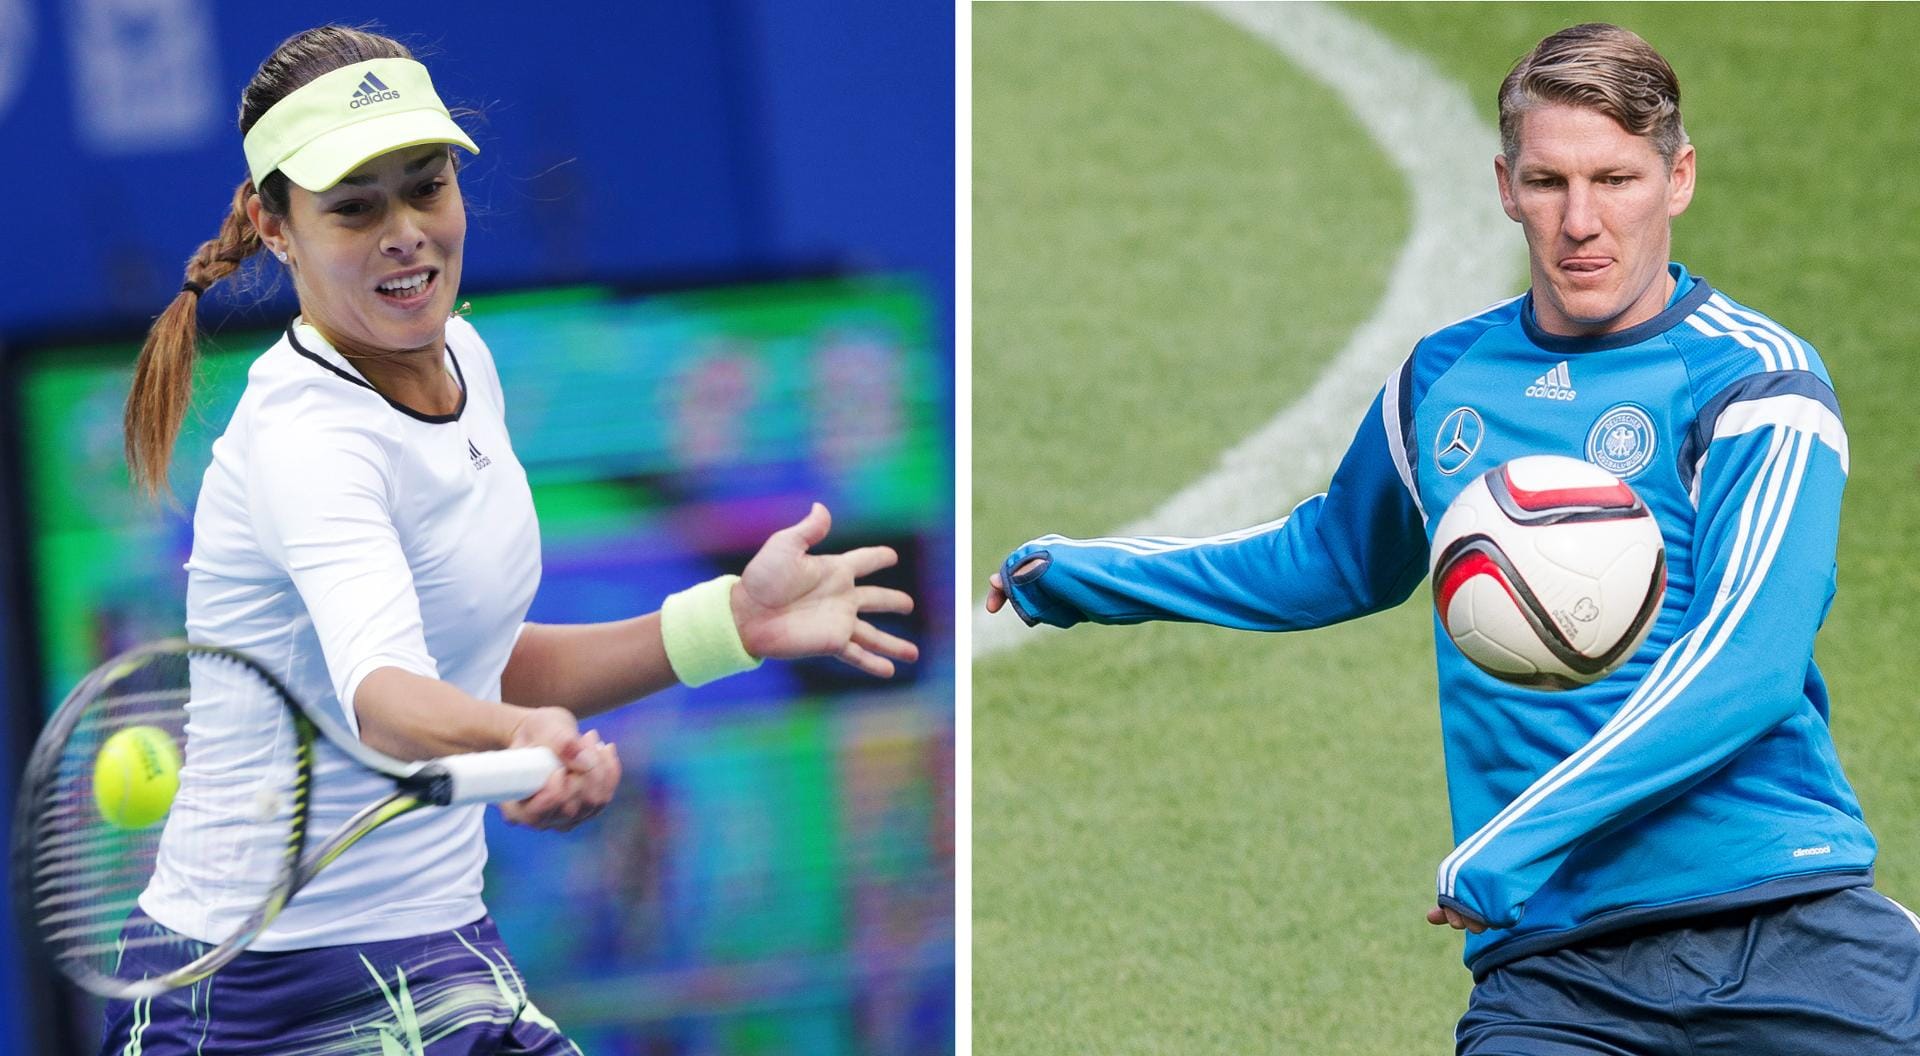 Die Profisportler Ana Ivanovic und Bastian Schweinsteiger nutzten die Spielpausen im Fußball und im Tennis, um ihr privates Glück zu besiegeln.